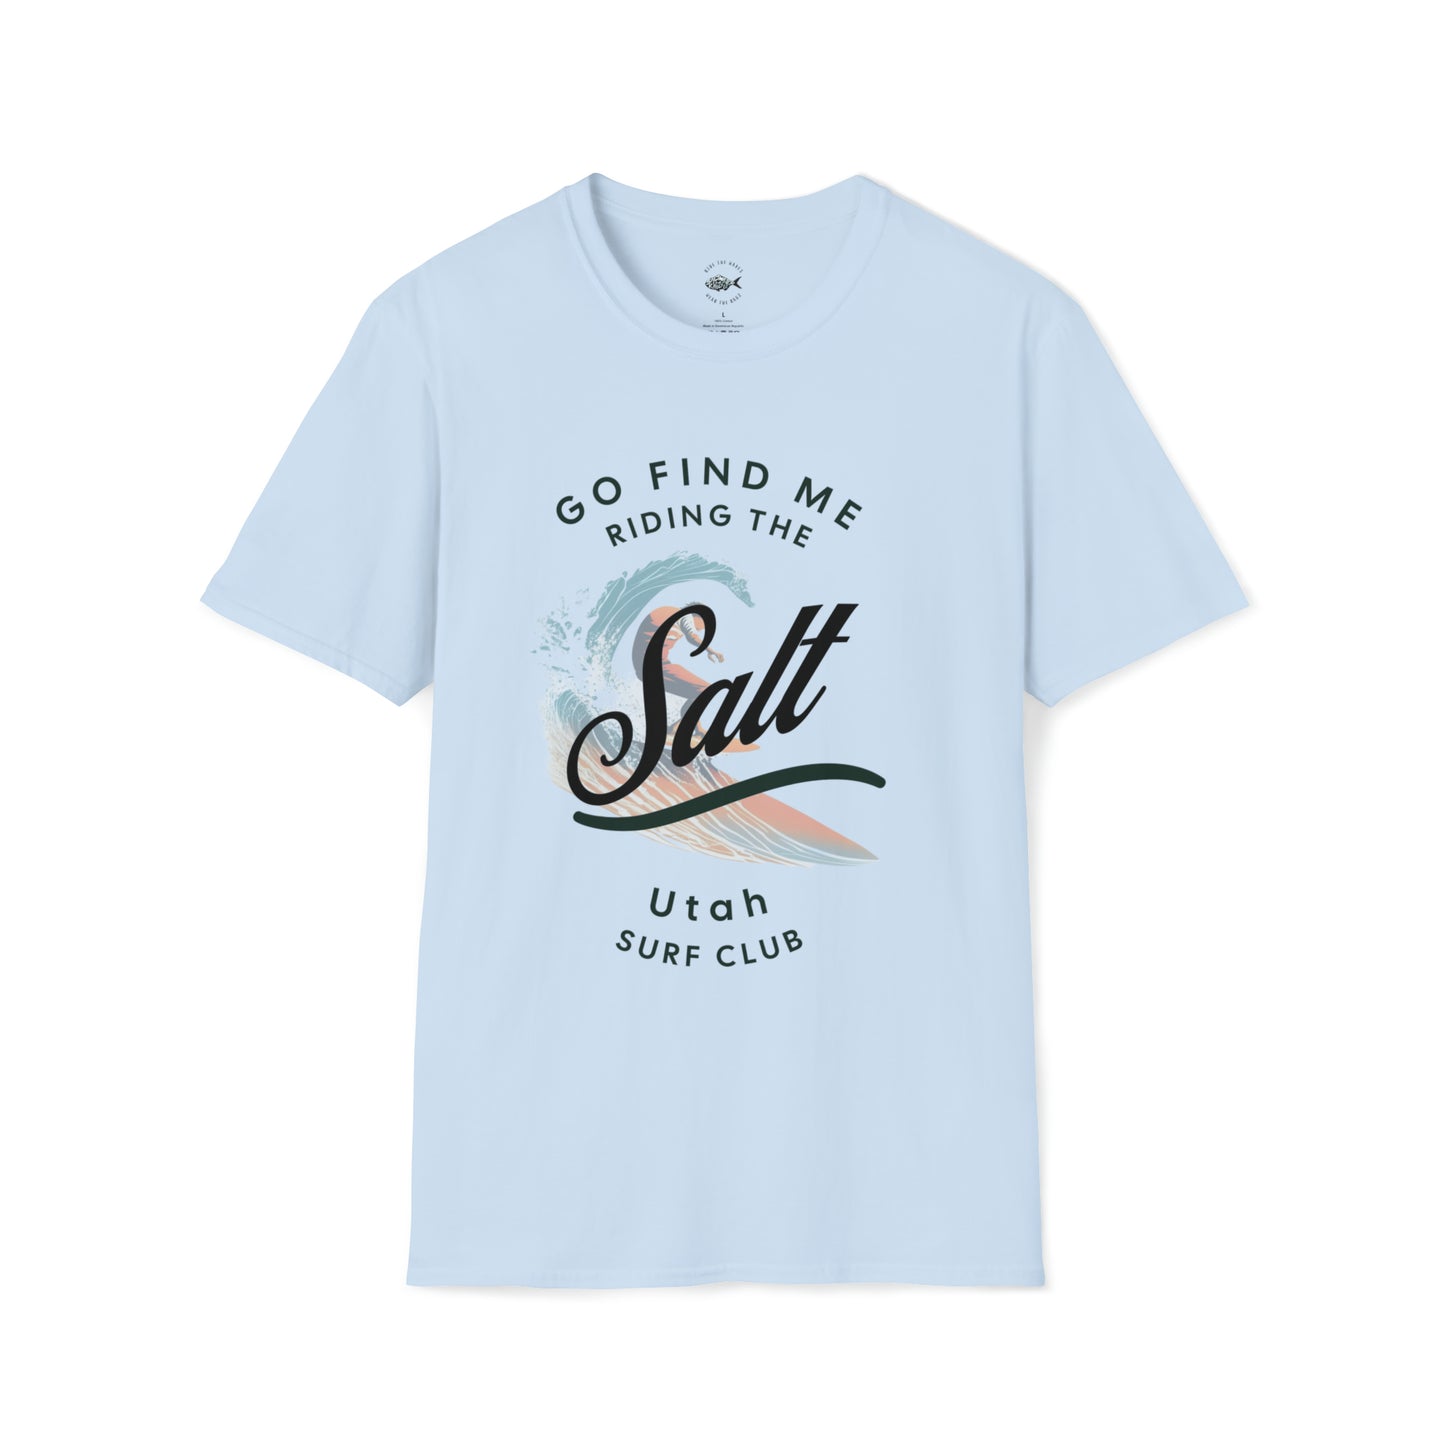 Everyone Deserves a Beach - Utah Beach Club T-Shirt